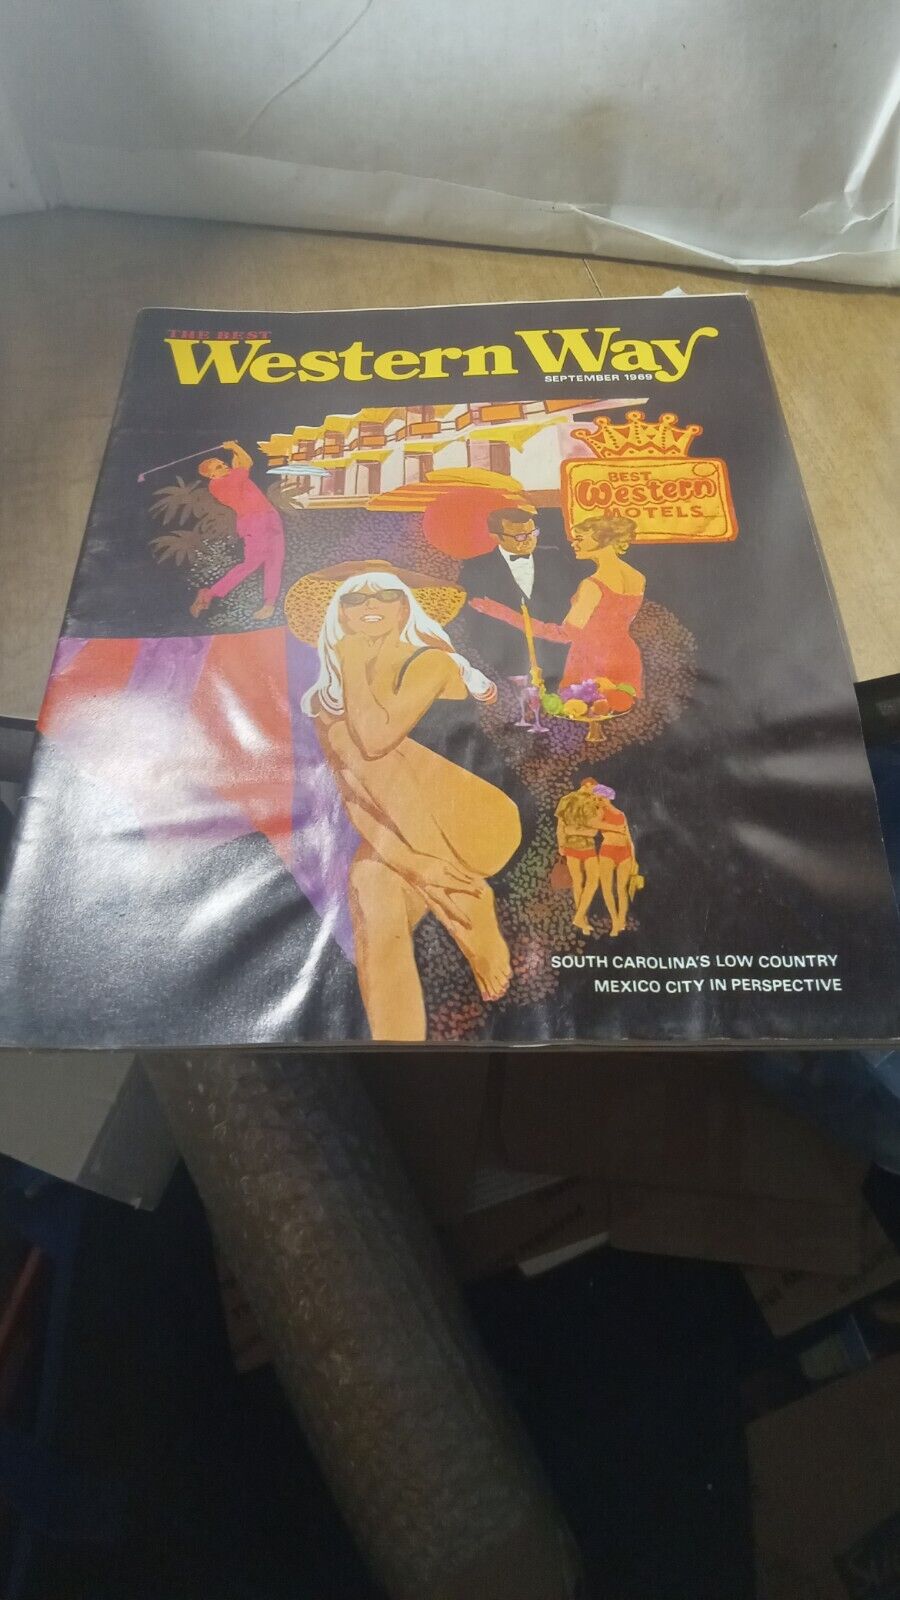 Sept 1969 The Best Western Way Hotel Magazine Vintage